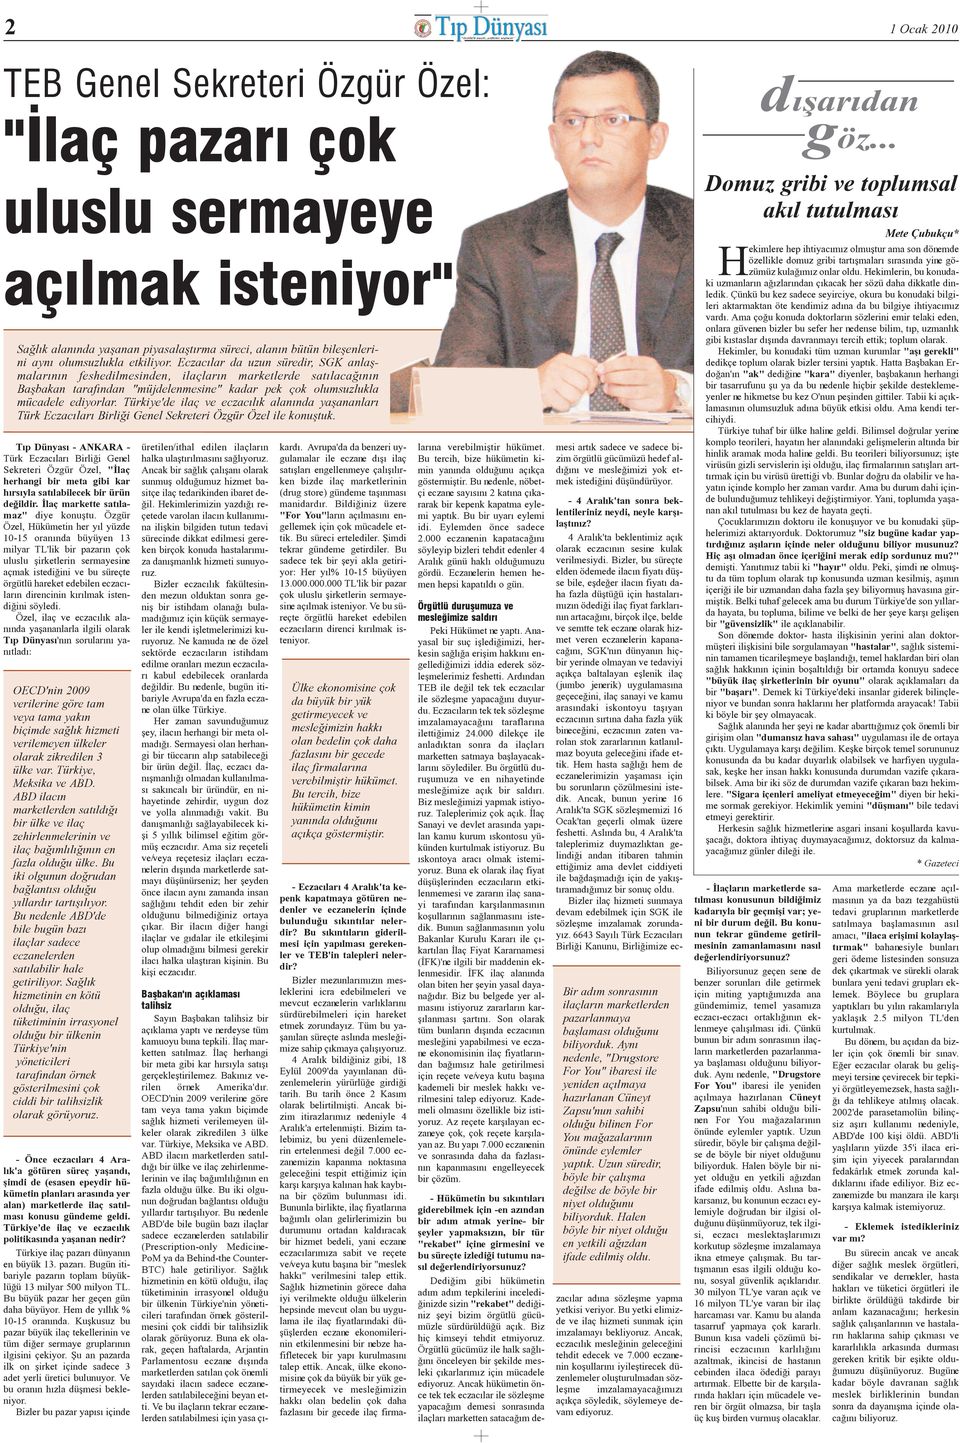 Türkiye'de ilaç ve eczacýlýk alanýnda yaþananlarý Türk Eczacýlarý Birliði Genel Sekreteri Özgür Özel ile konuþtuk.